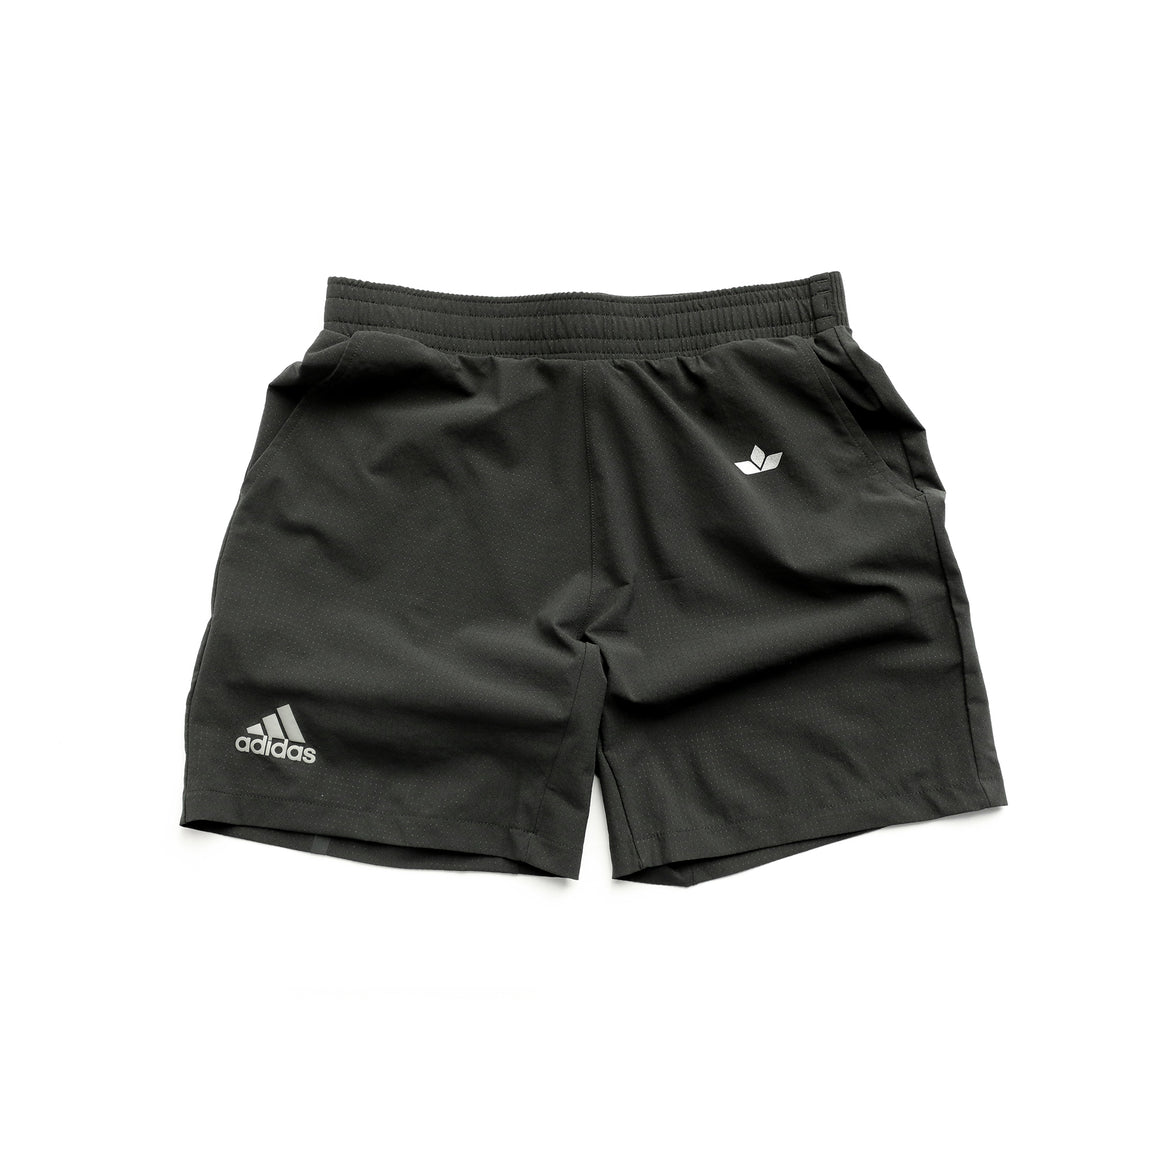 Centre X Adidas Ergo Tennis Shorts (Black) - Centre X Adidas Ergo Tennis Shorts (Black) - 